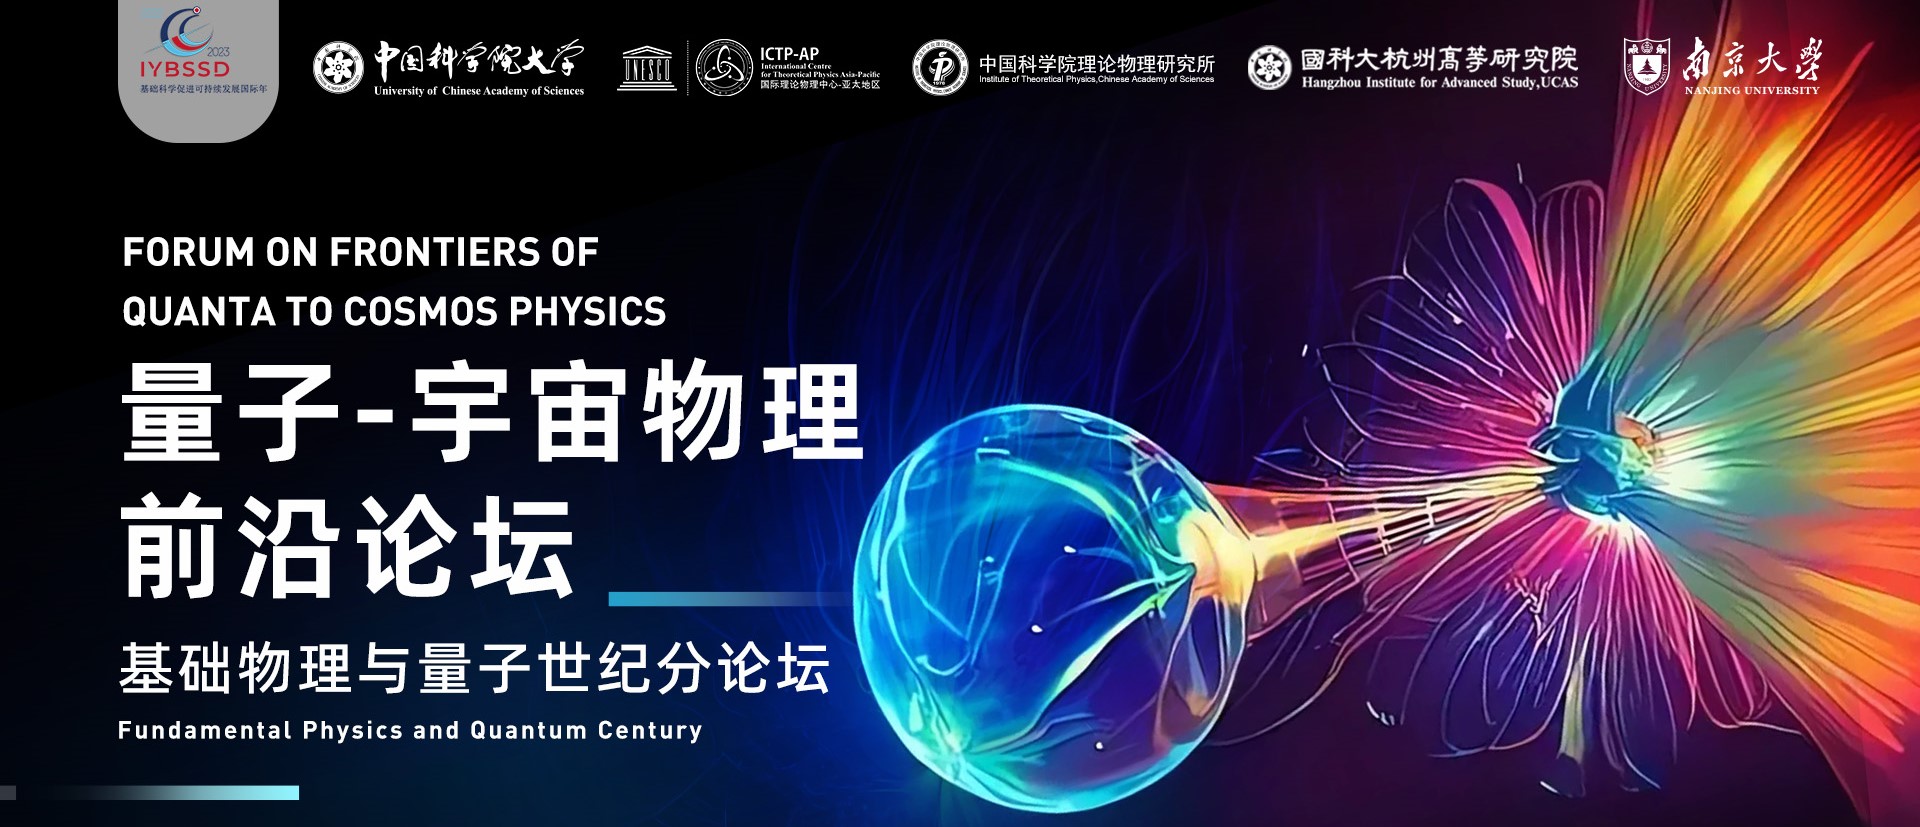 ICTP-AP在苏州举办“基础物理与量子世纪”分论坛